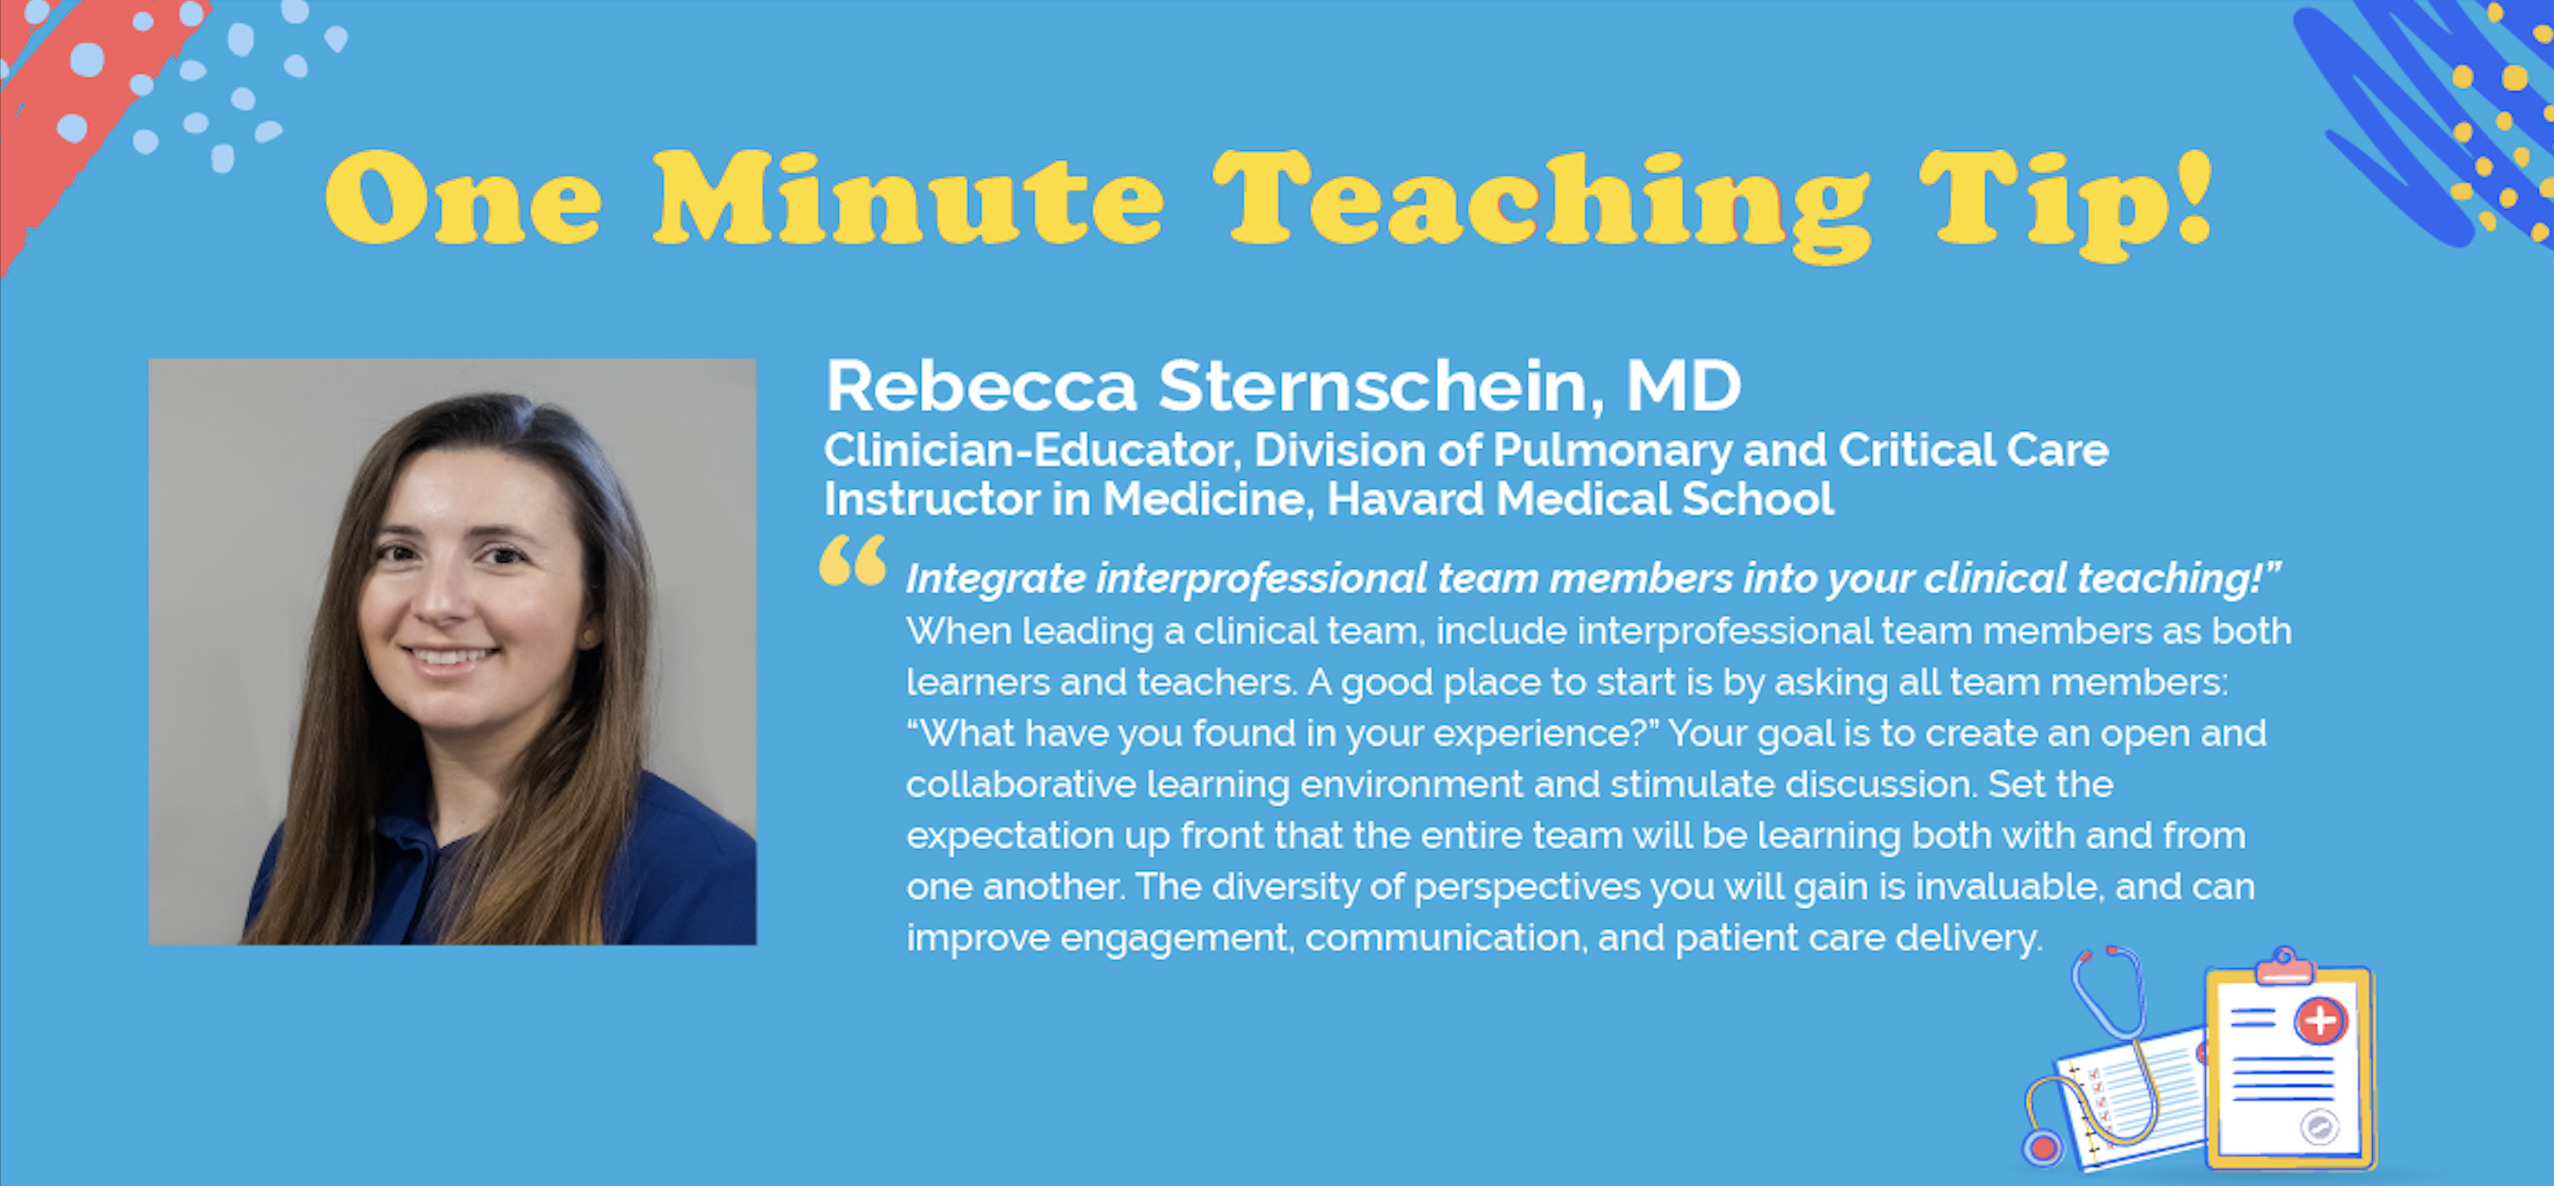 Rebecca Sternschein teach tip pic